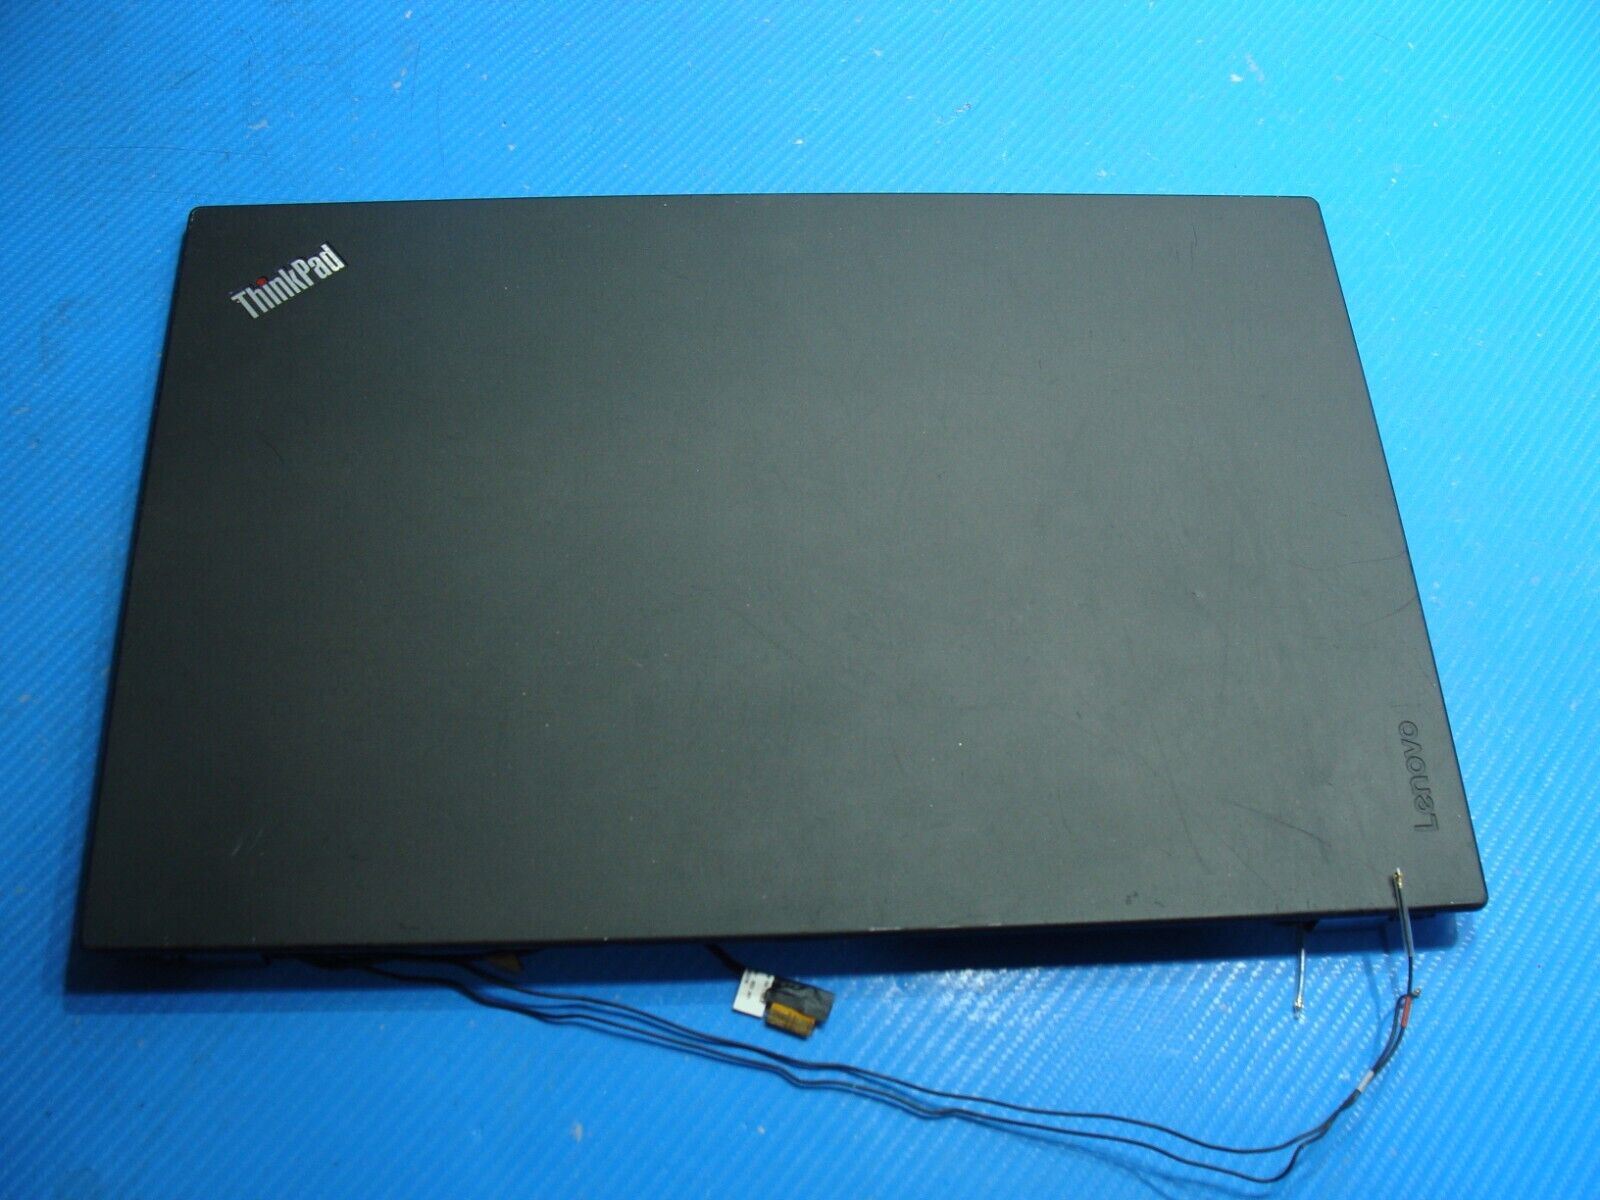 Lenovo ThinkPad P50s 15.6